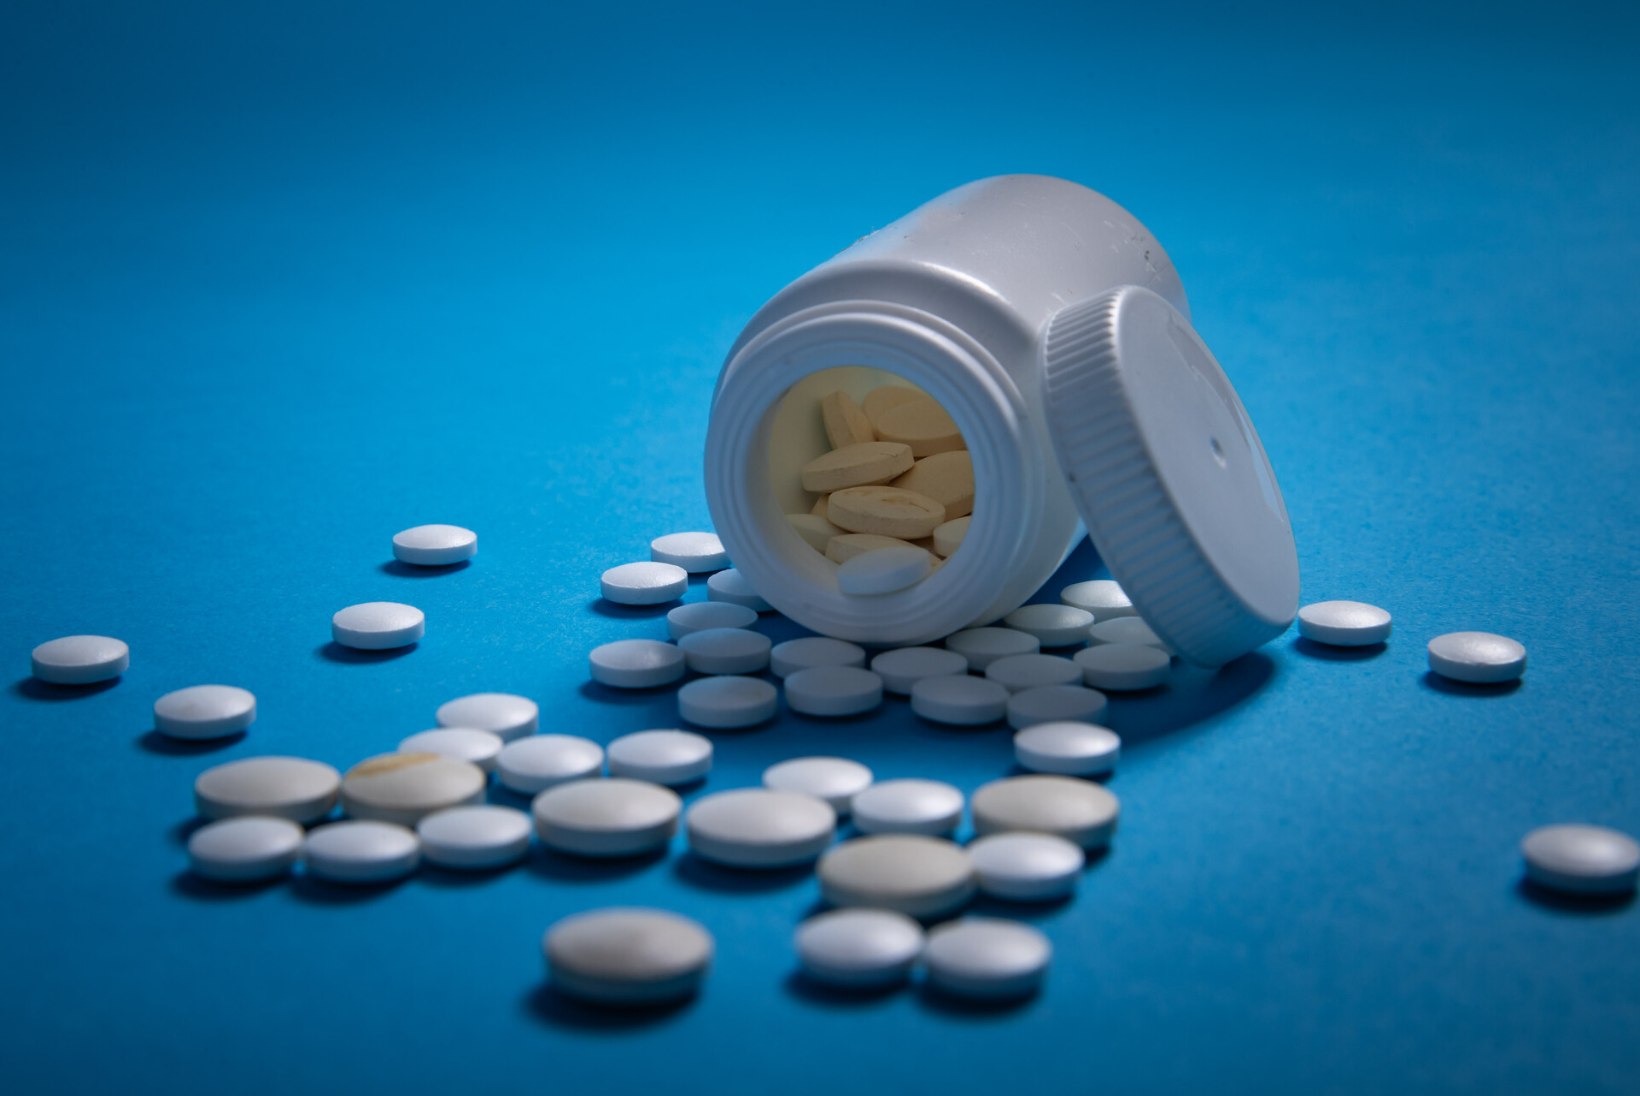 Andmekaitse inspektsioon andis loa: e-apteekidest saab taas teisele inimesele ravimeid osta 